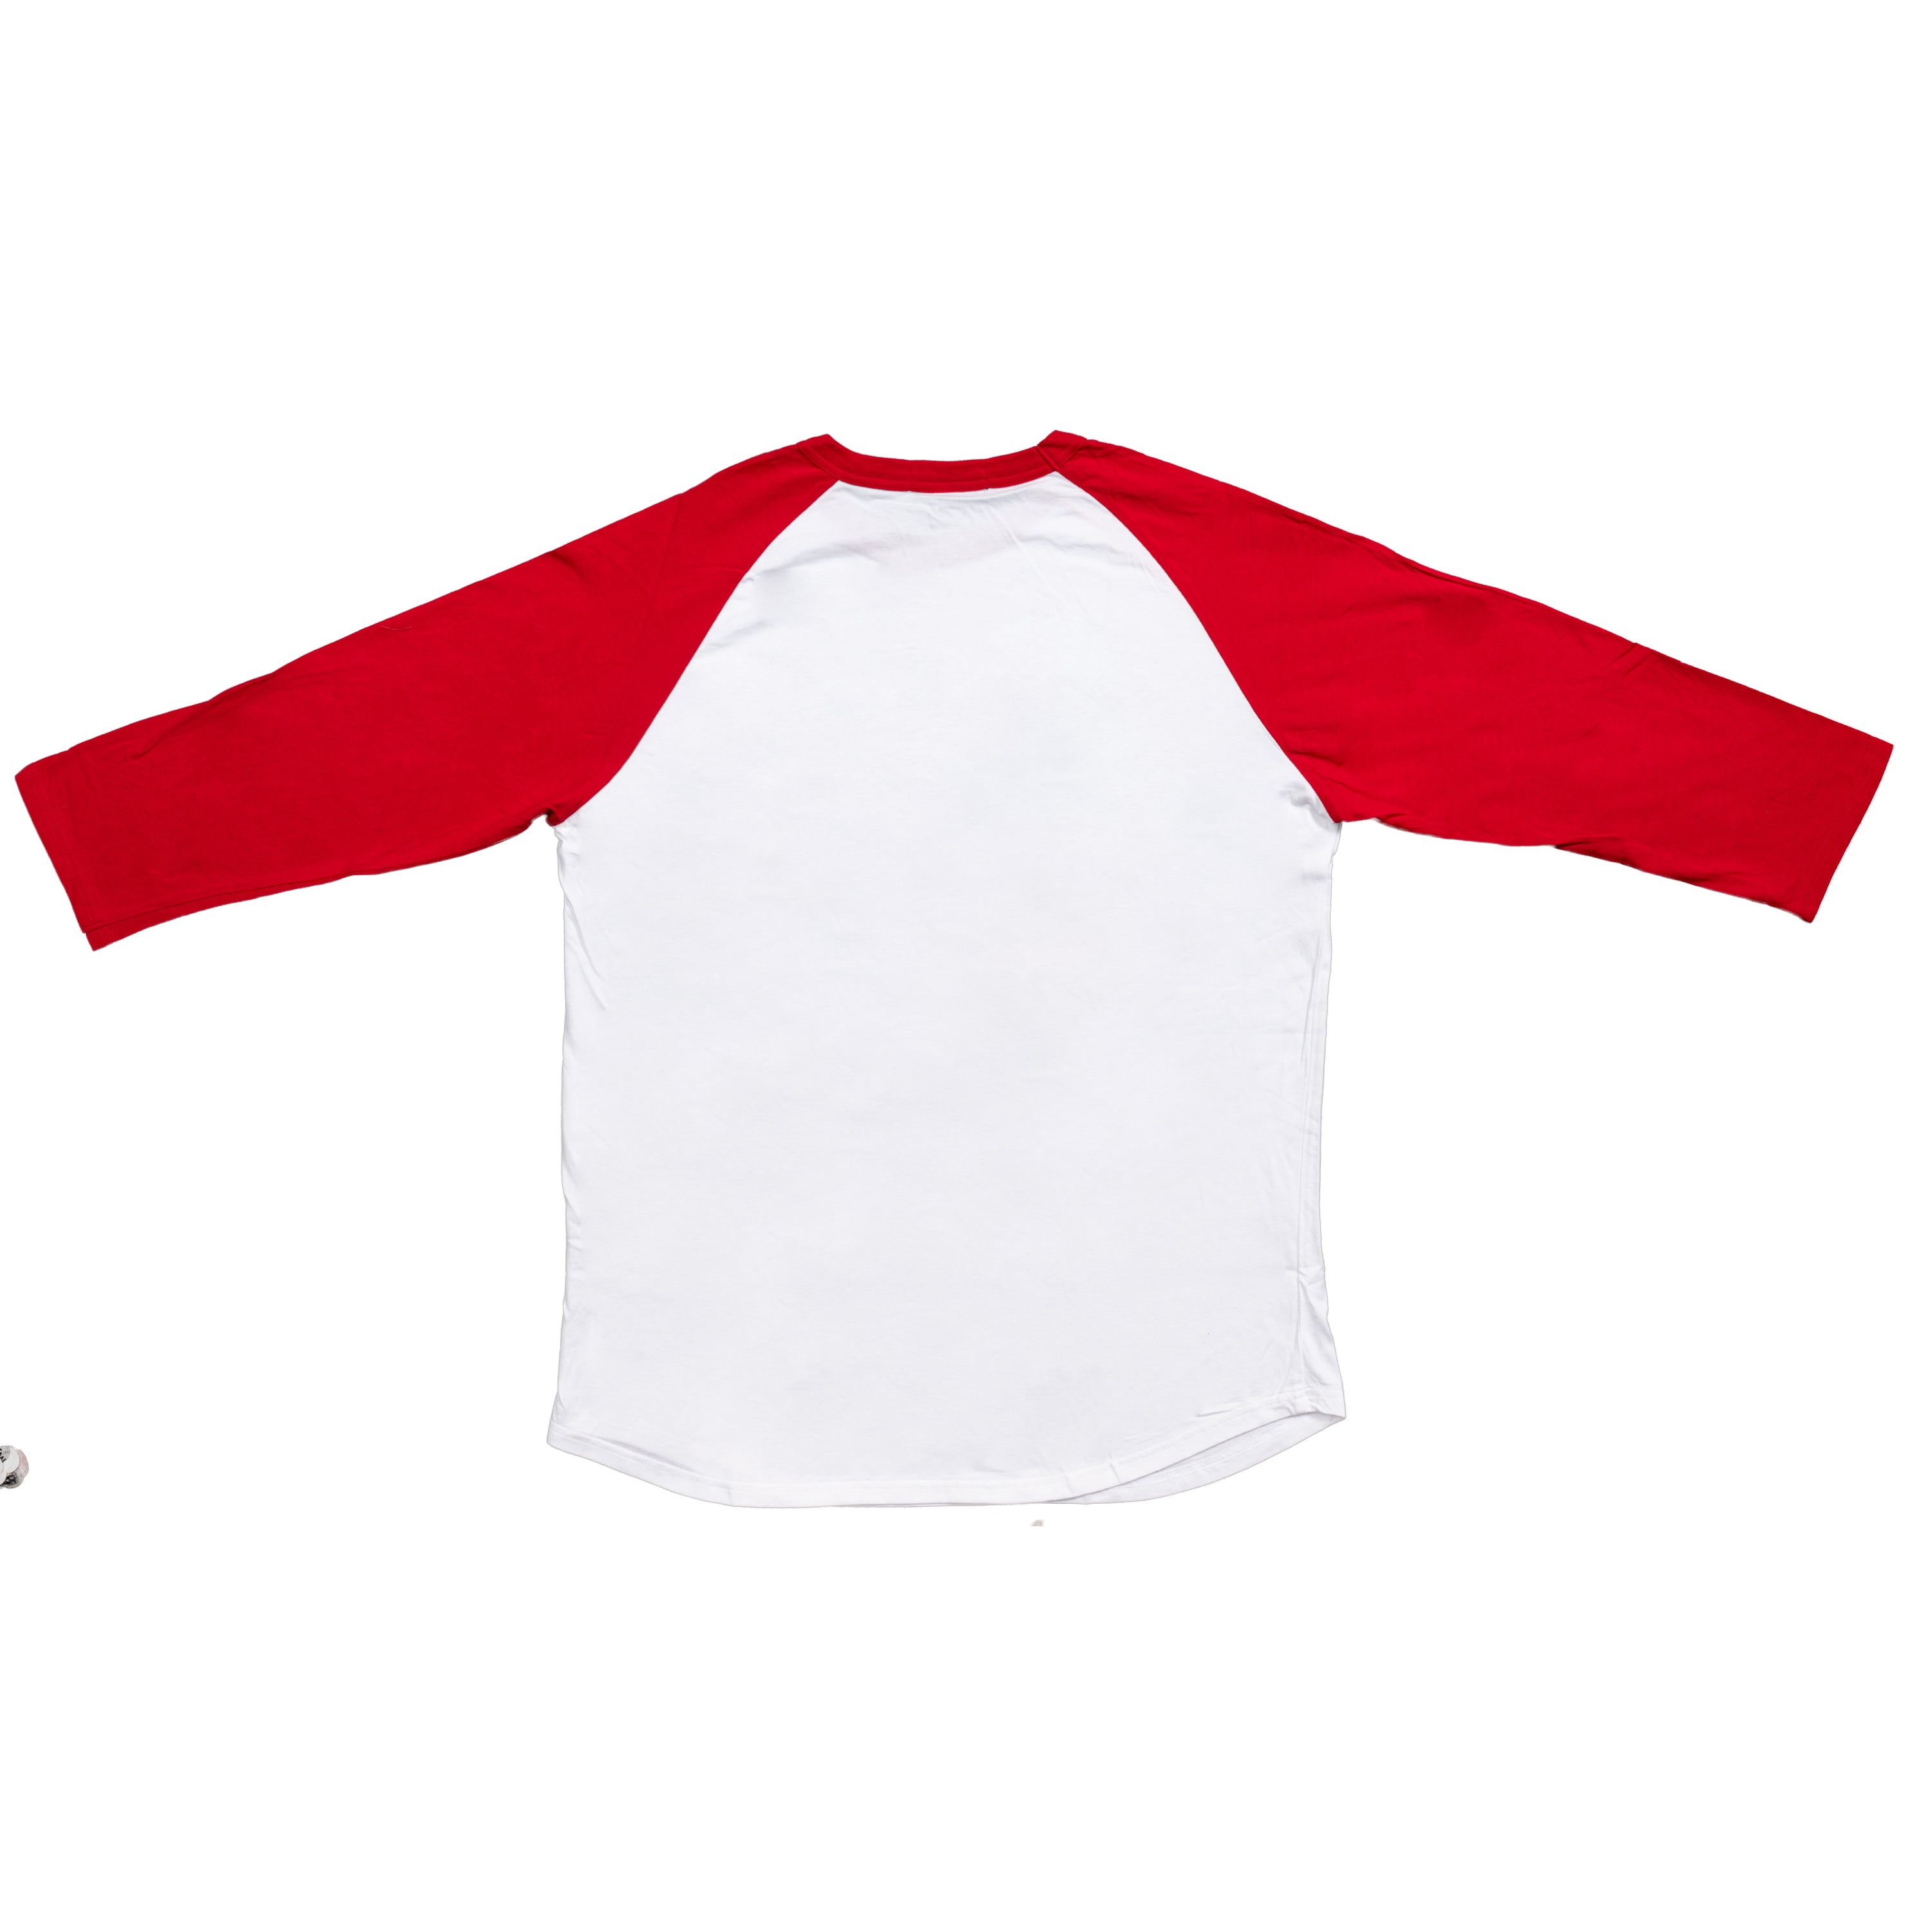 Revenge of the Nerds High On Stress White & Red Adult Raglan Shirt